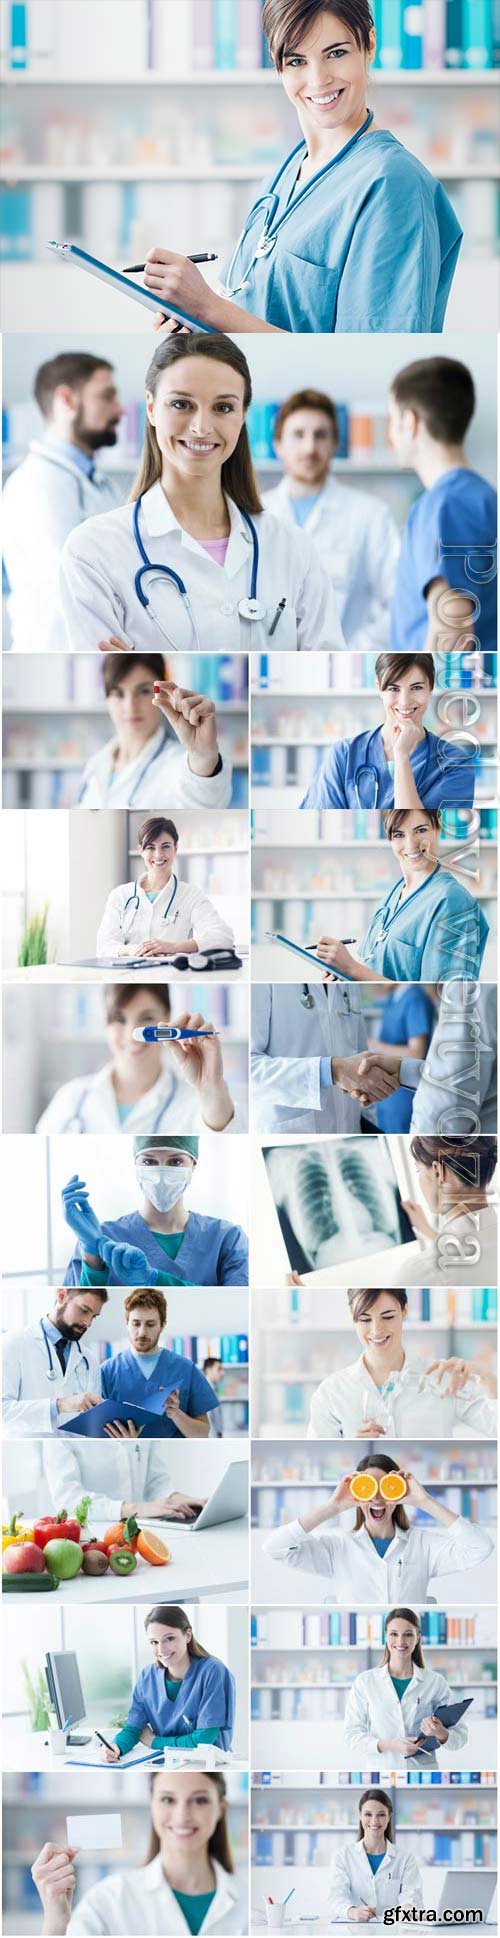 Men and women doctors stock photo